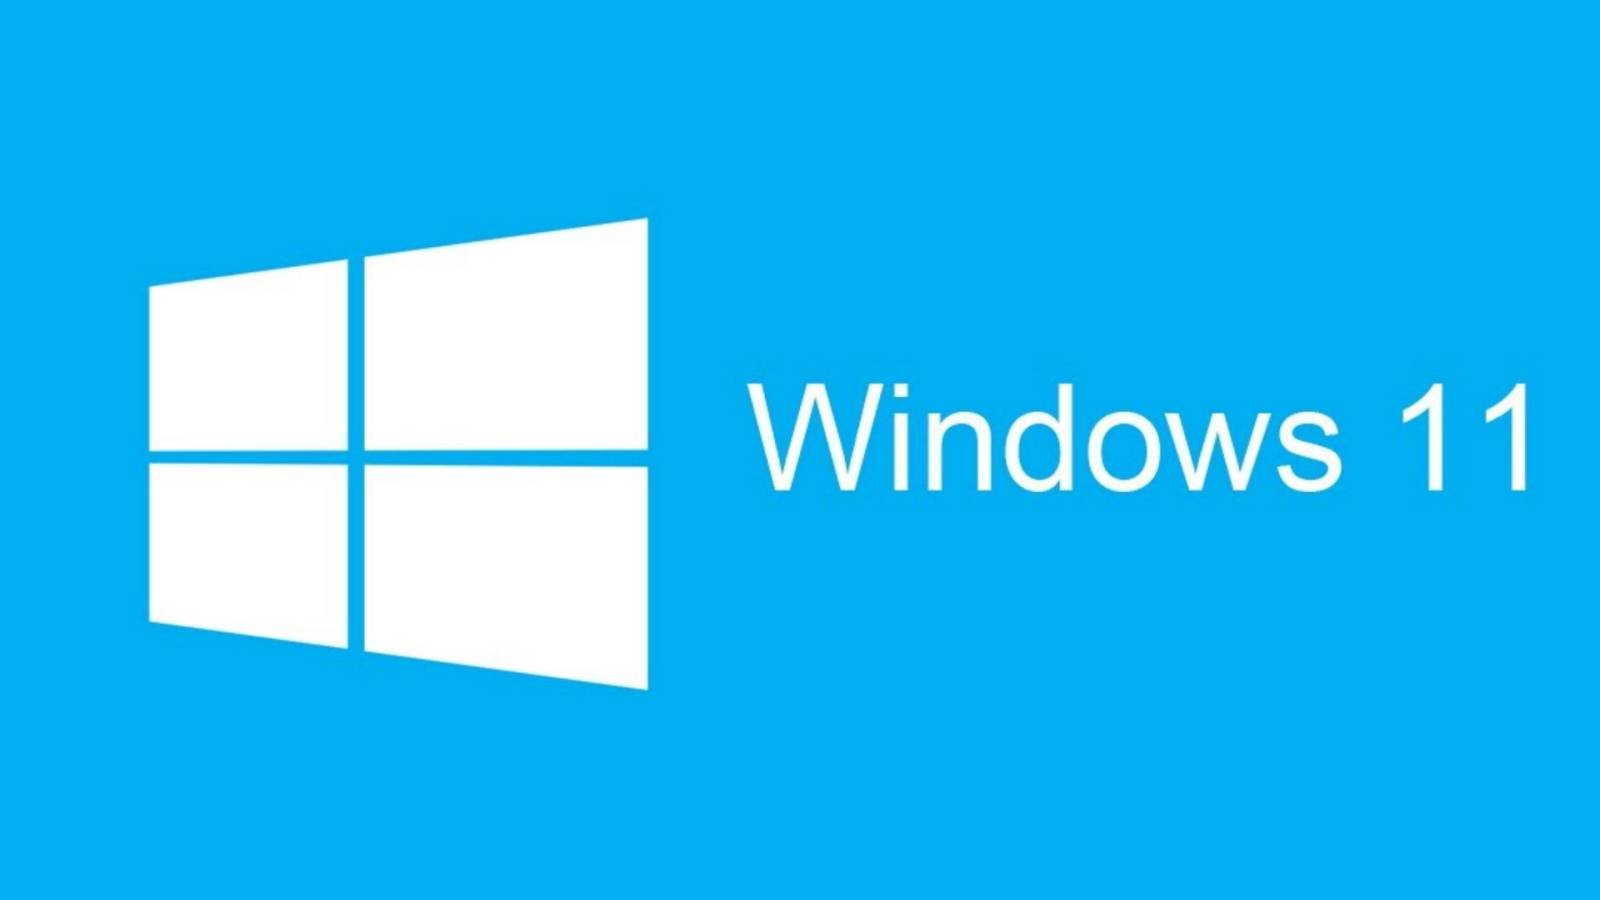 ALERTA Windows 11 Anuntul Major facut Microsoft